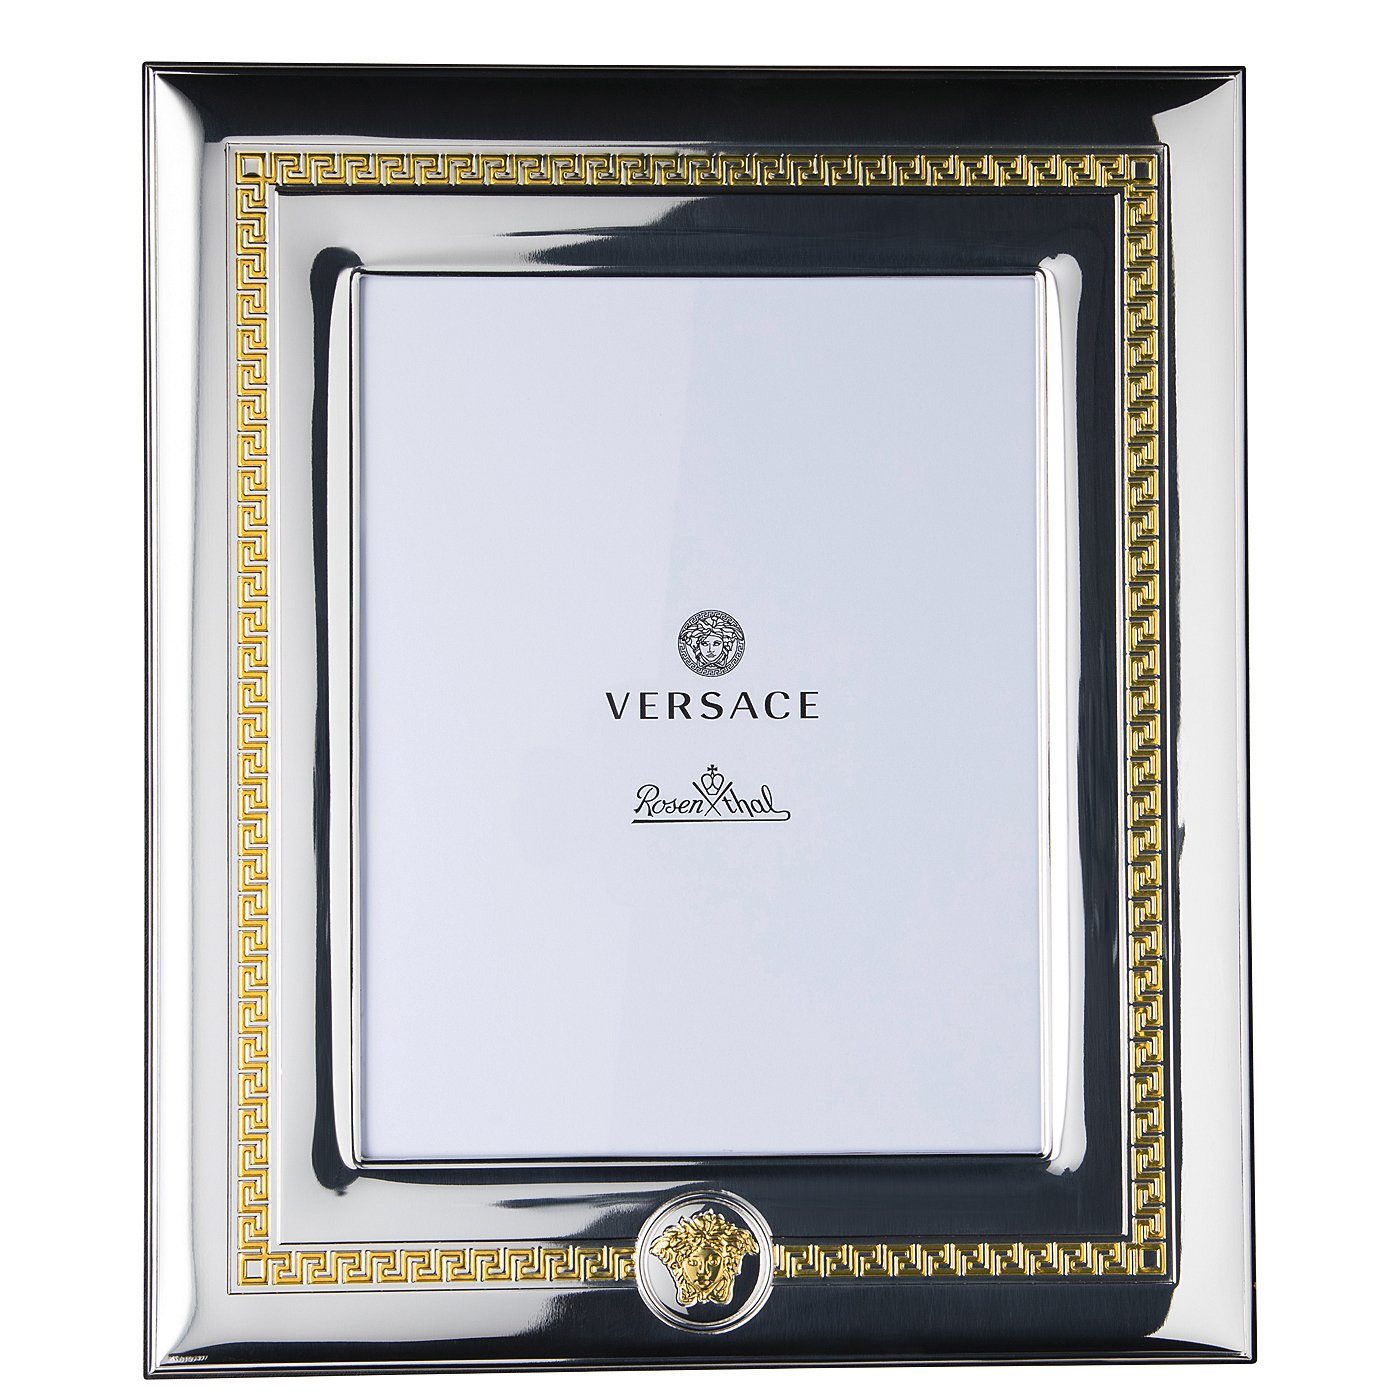 VHF6 meets 20x25cm Bilderrahmen Versace Silber/Gold Rosenthal Frames